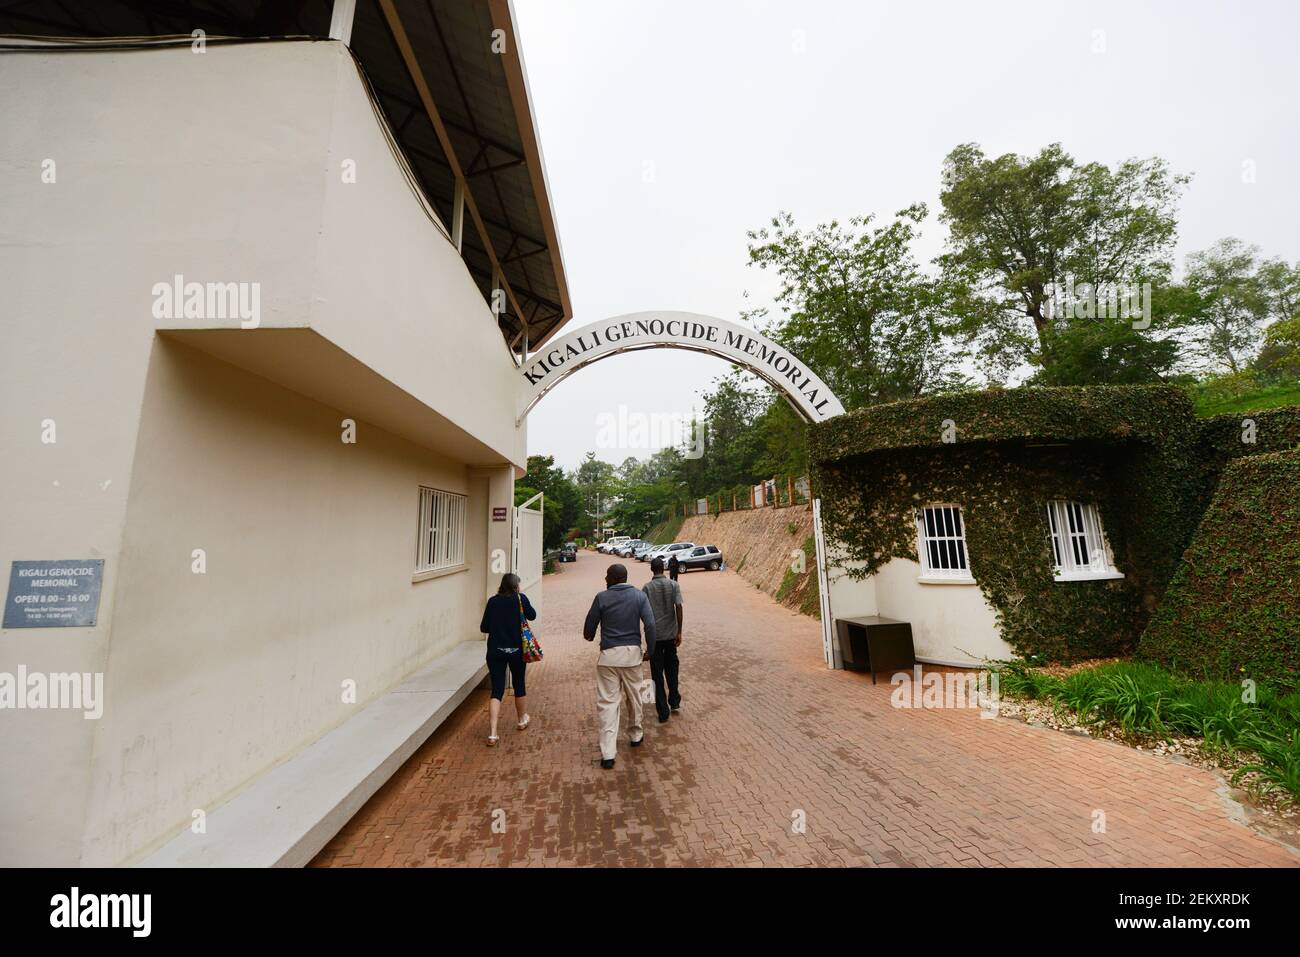 Rwandan genocide memorial in Kigali, Rwanda. Stock Photo